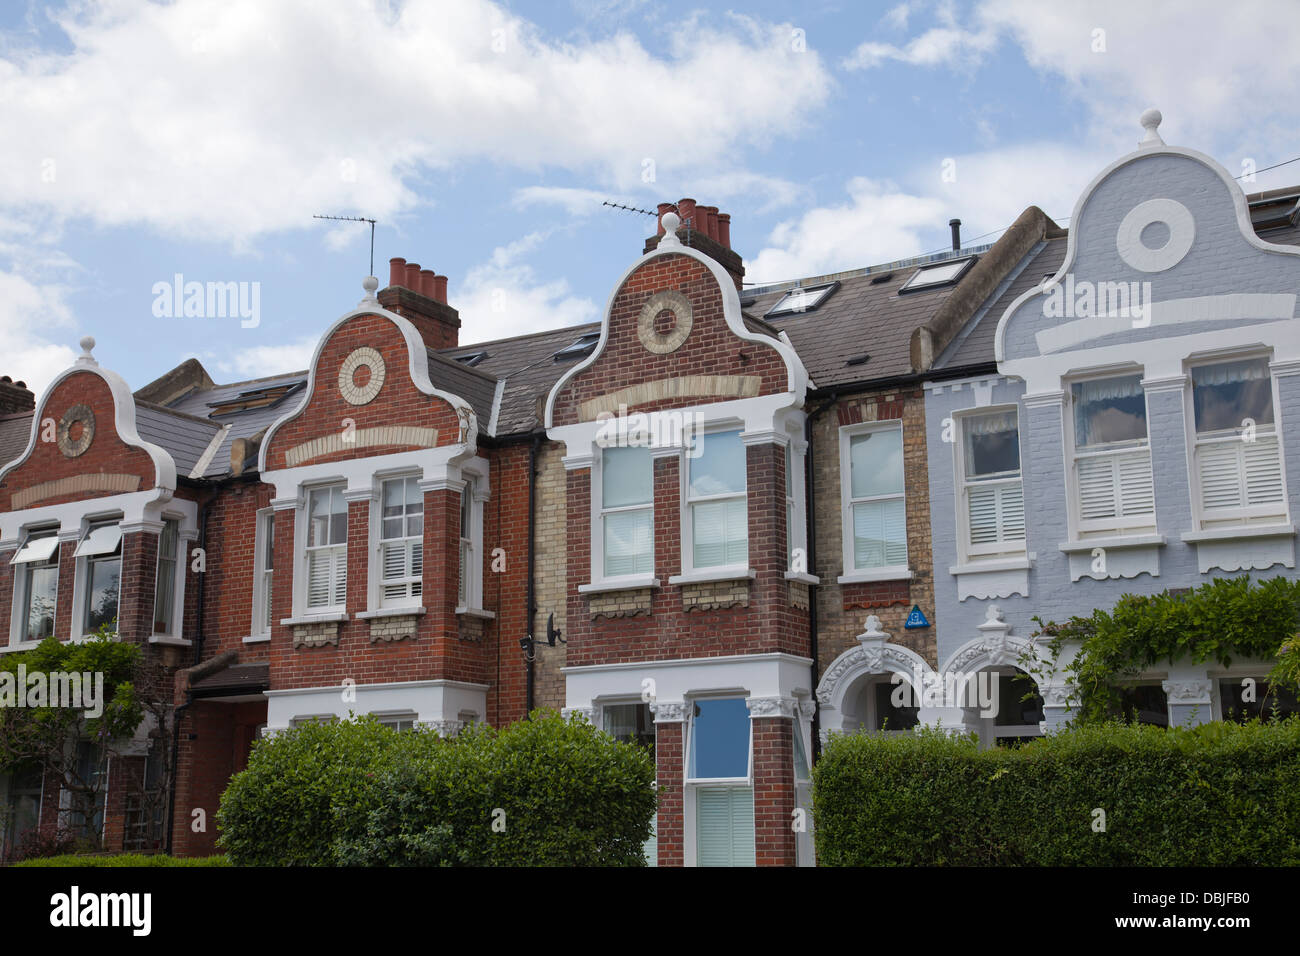 Maisons jumelées sur Soeurs Avenue à Wandsworth Battersea - Londres - Royaume-Uni Banque D'Images